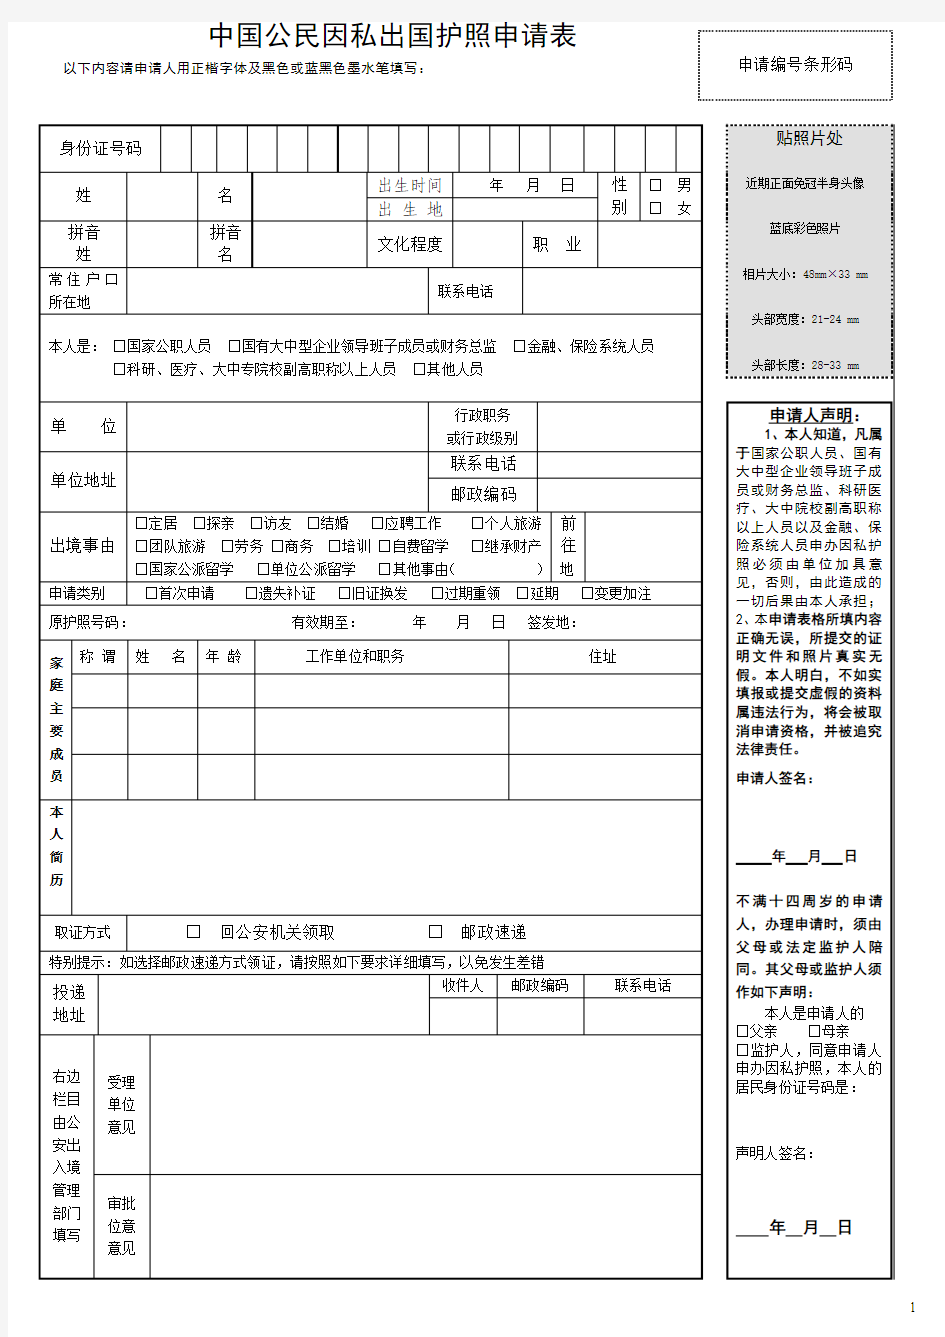 中国公民因私出国护照申请表